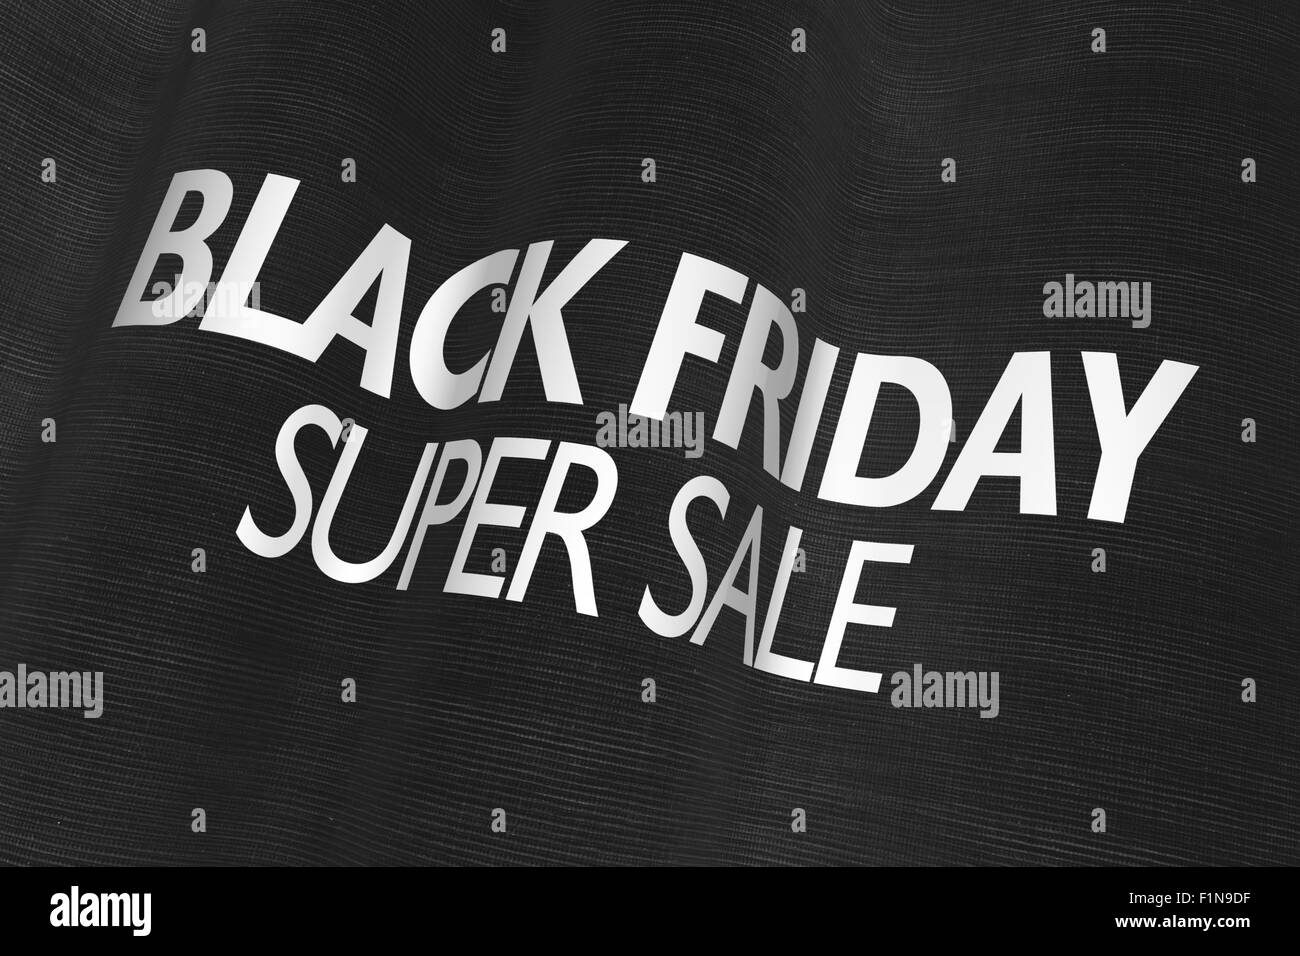 Tiendas compras Imágenes de stock en blanco y negro - Alamy